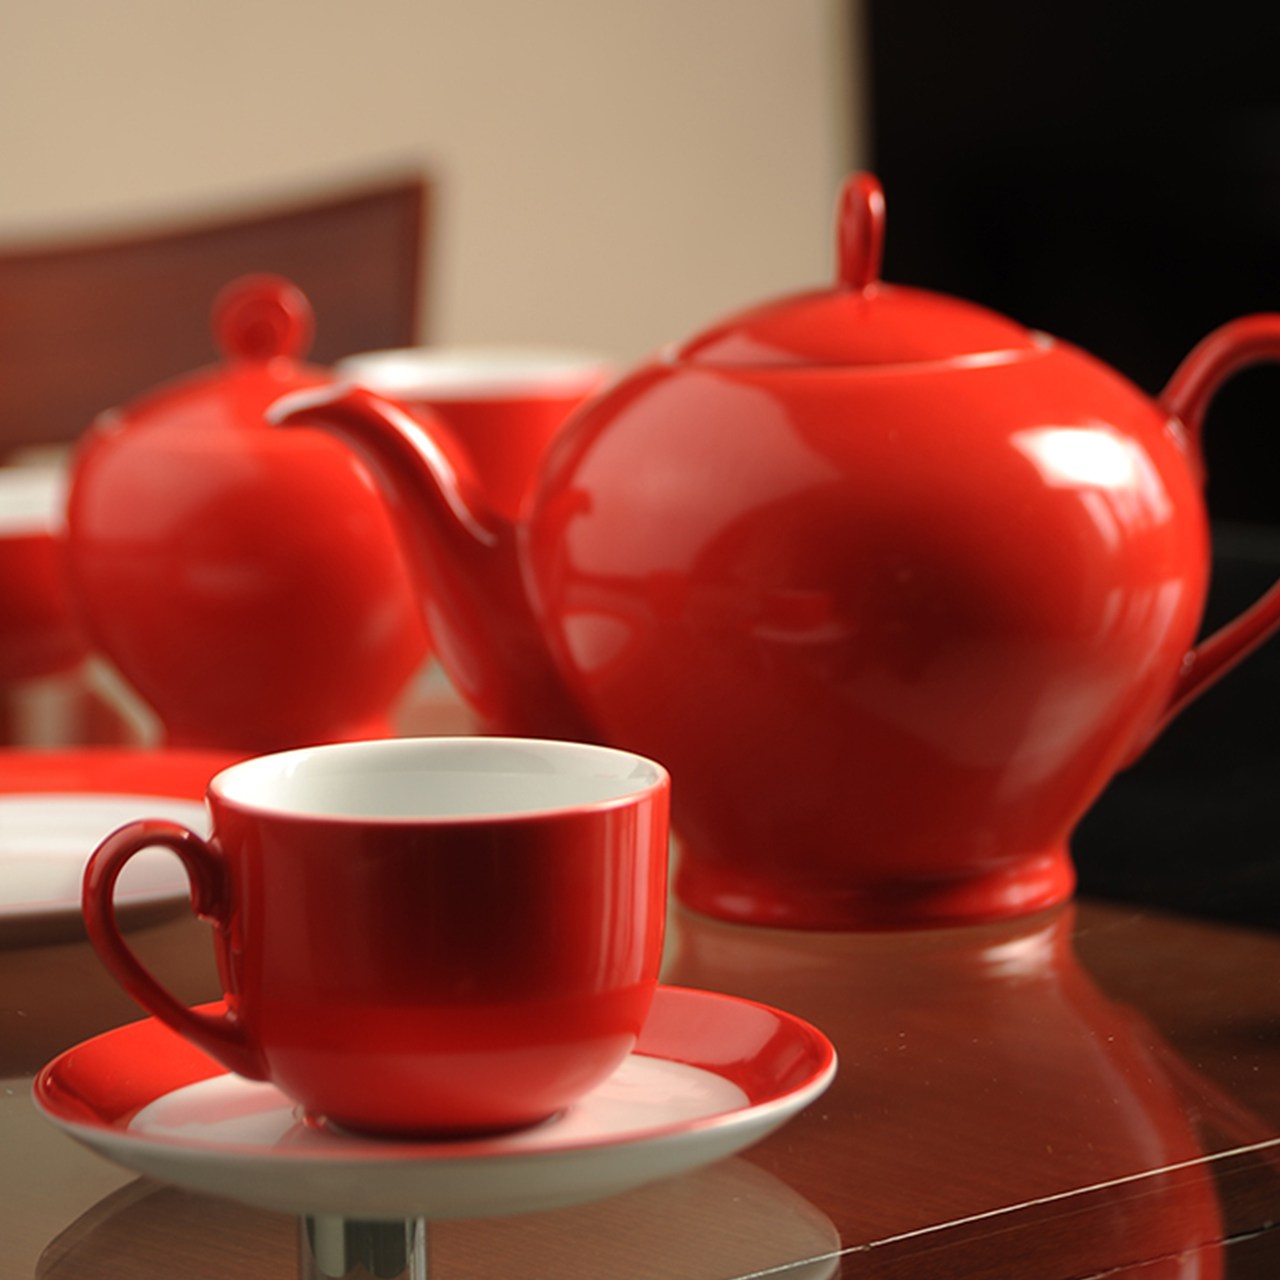 سرویس چینی 17 پارچه چای خوری چینی زرین ایران سری ایتالیا اف مدل گیلاس درجه عالی